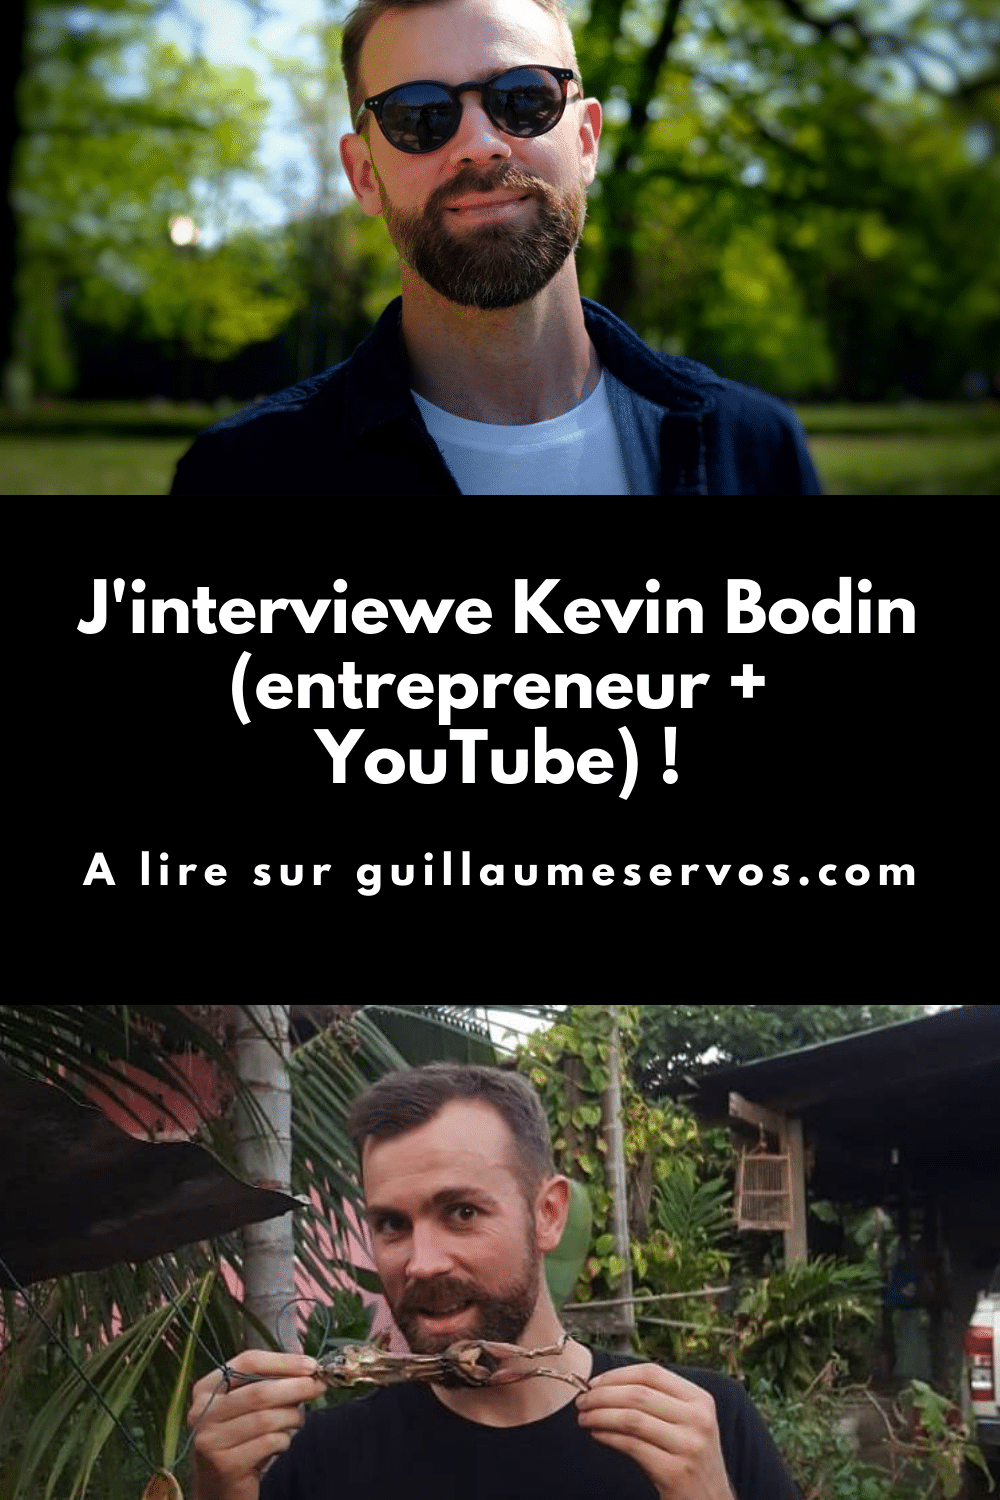 Découvre mon interview avec Kevin Bodin, entrepreneur et youtubeur. Au menu : son rapport à l'entrepreneuriat, à sa chaîne YouTube, aux réseaux sociaux et au voyage.